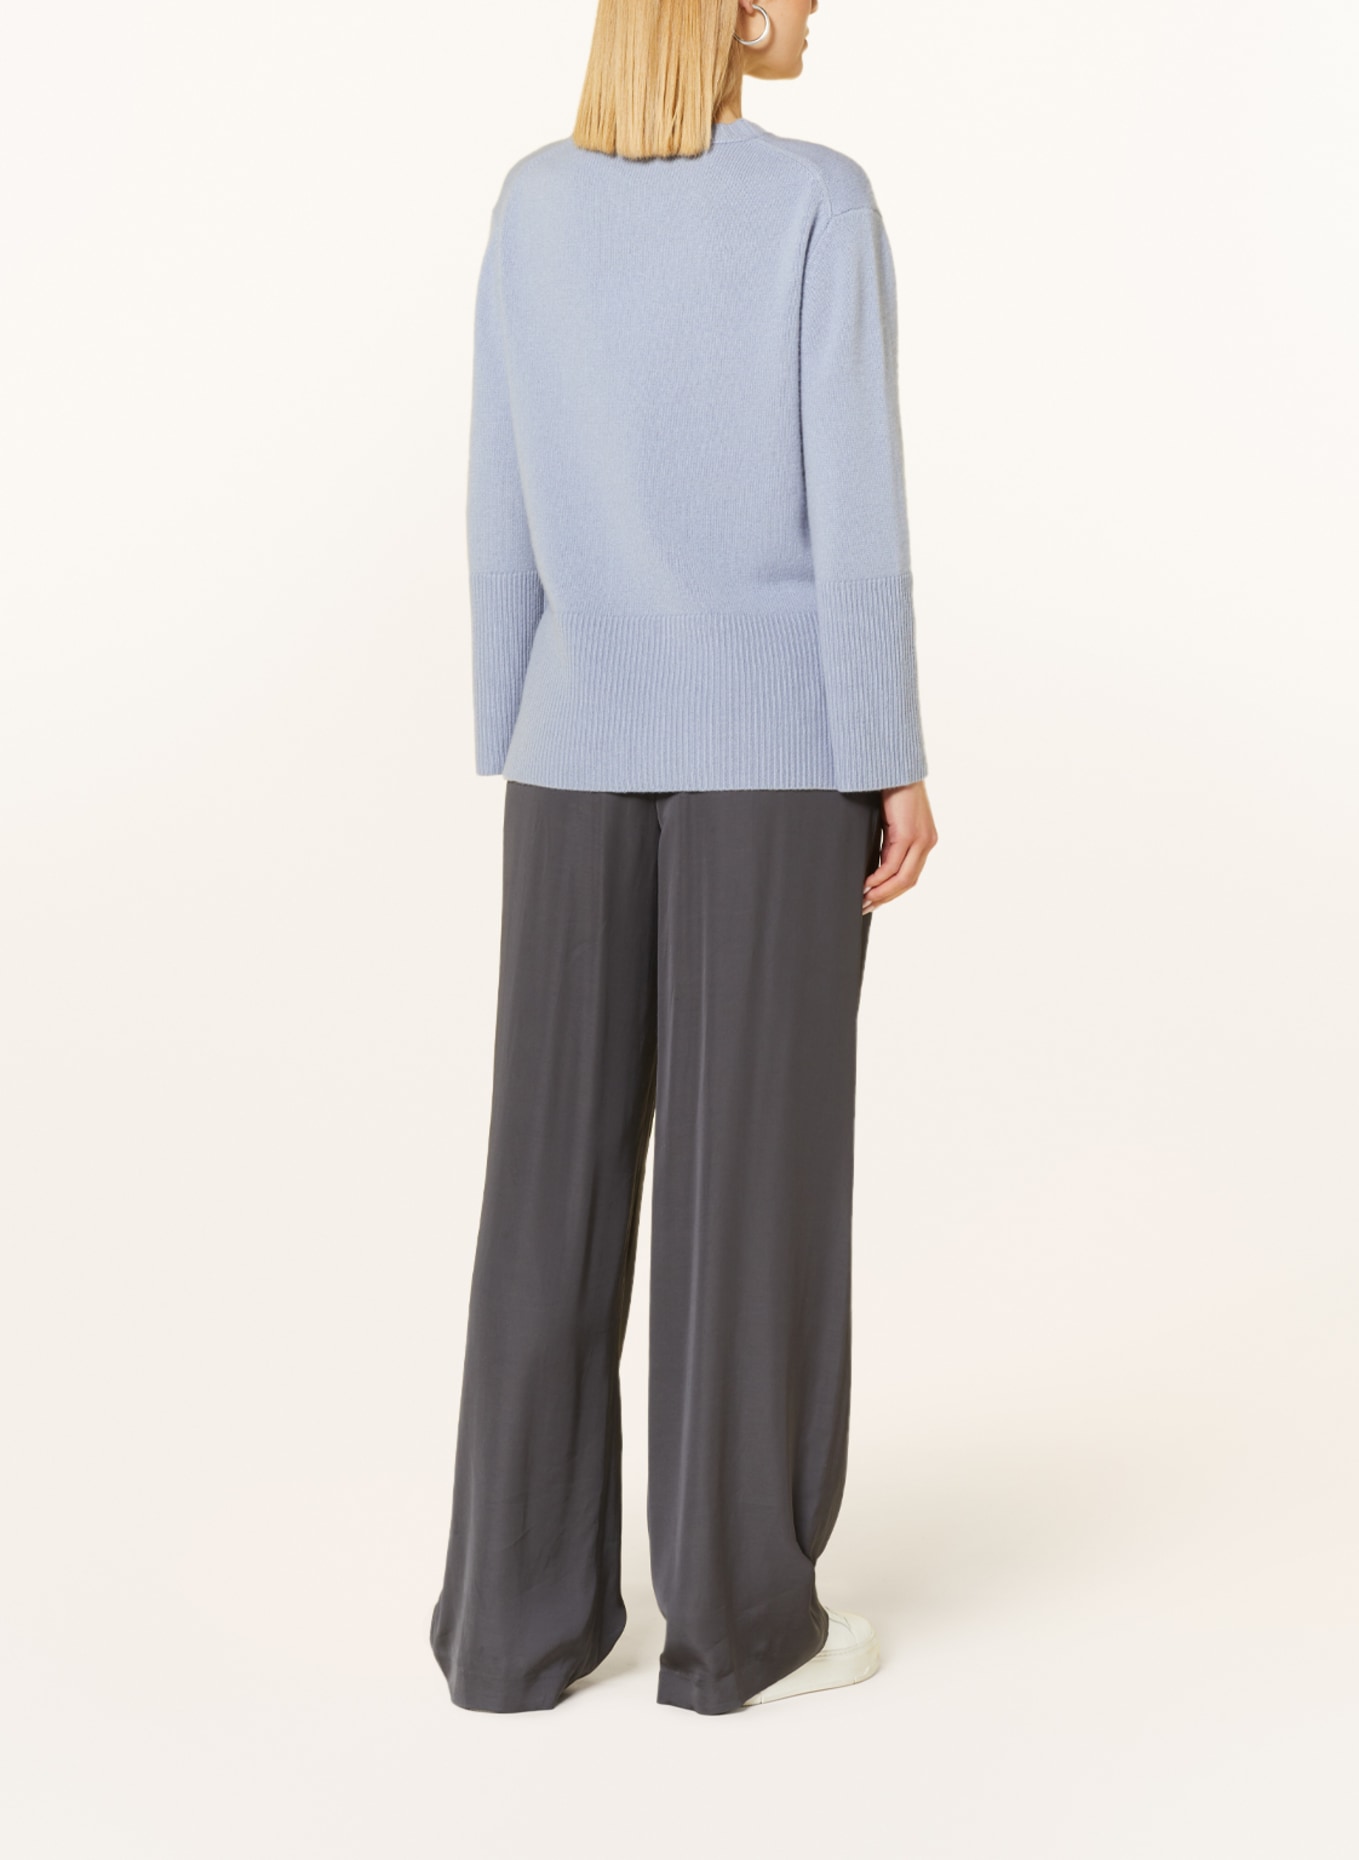 HEMISPHERE Cashmere-Pullover, Farbe: 5174 hellblau (Bild 3)